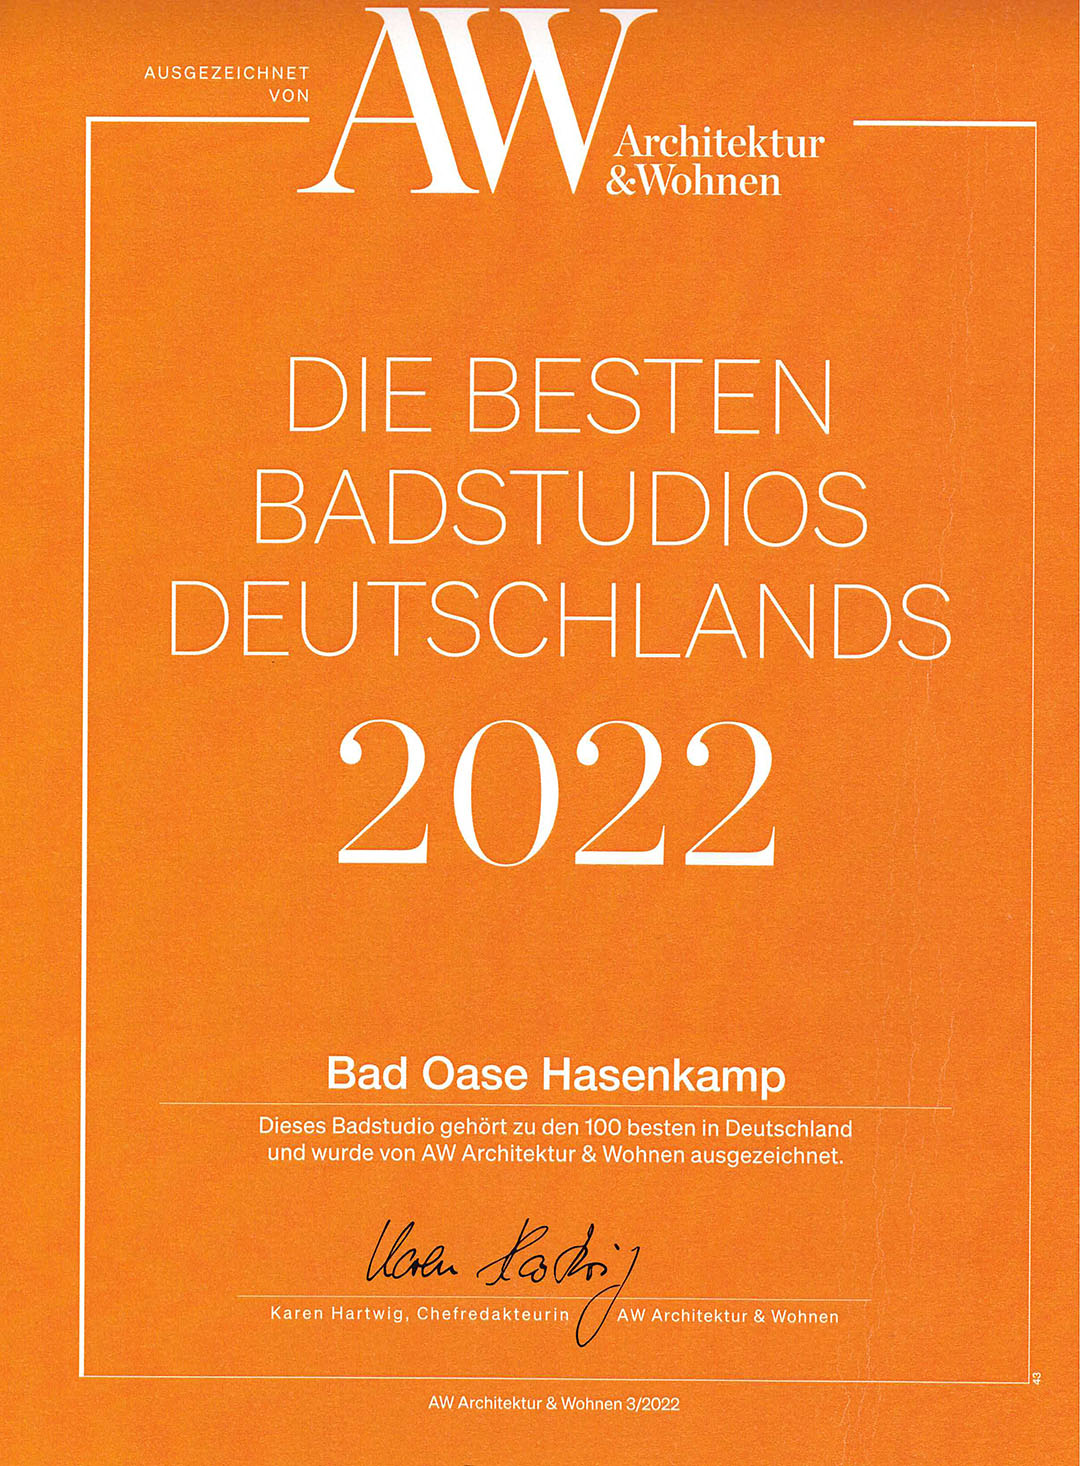 Beste Badstudios in Deutschland - Badausstellung mit Auszeichnung